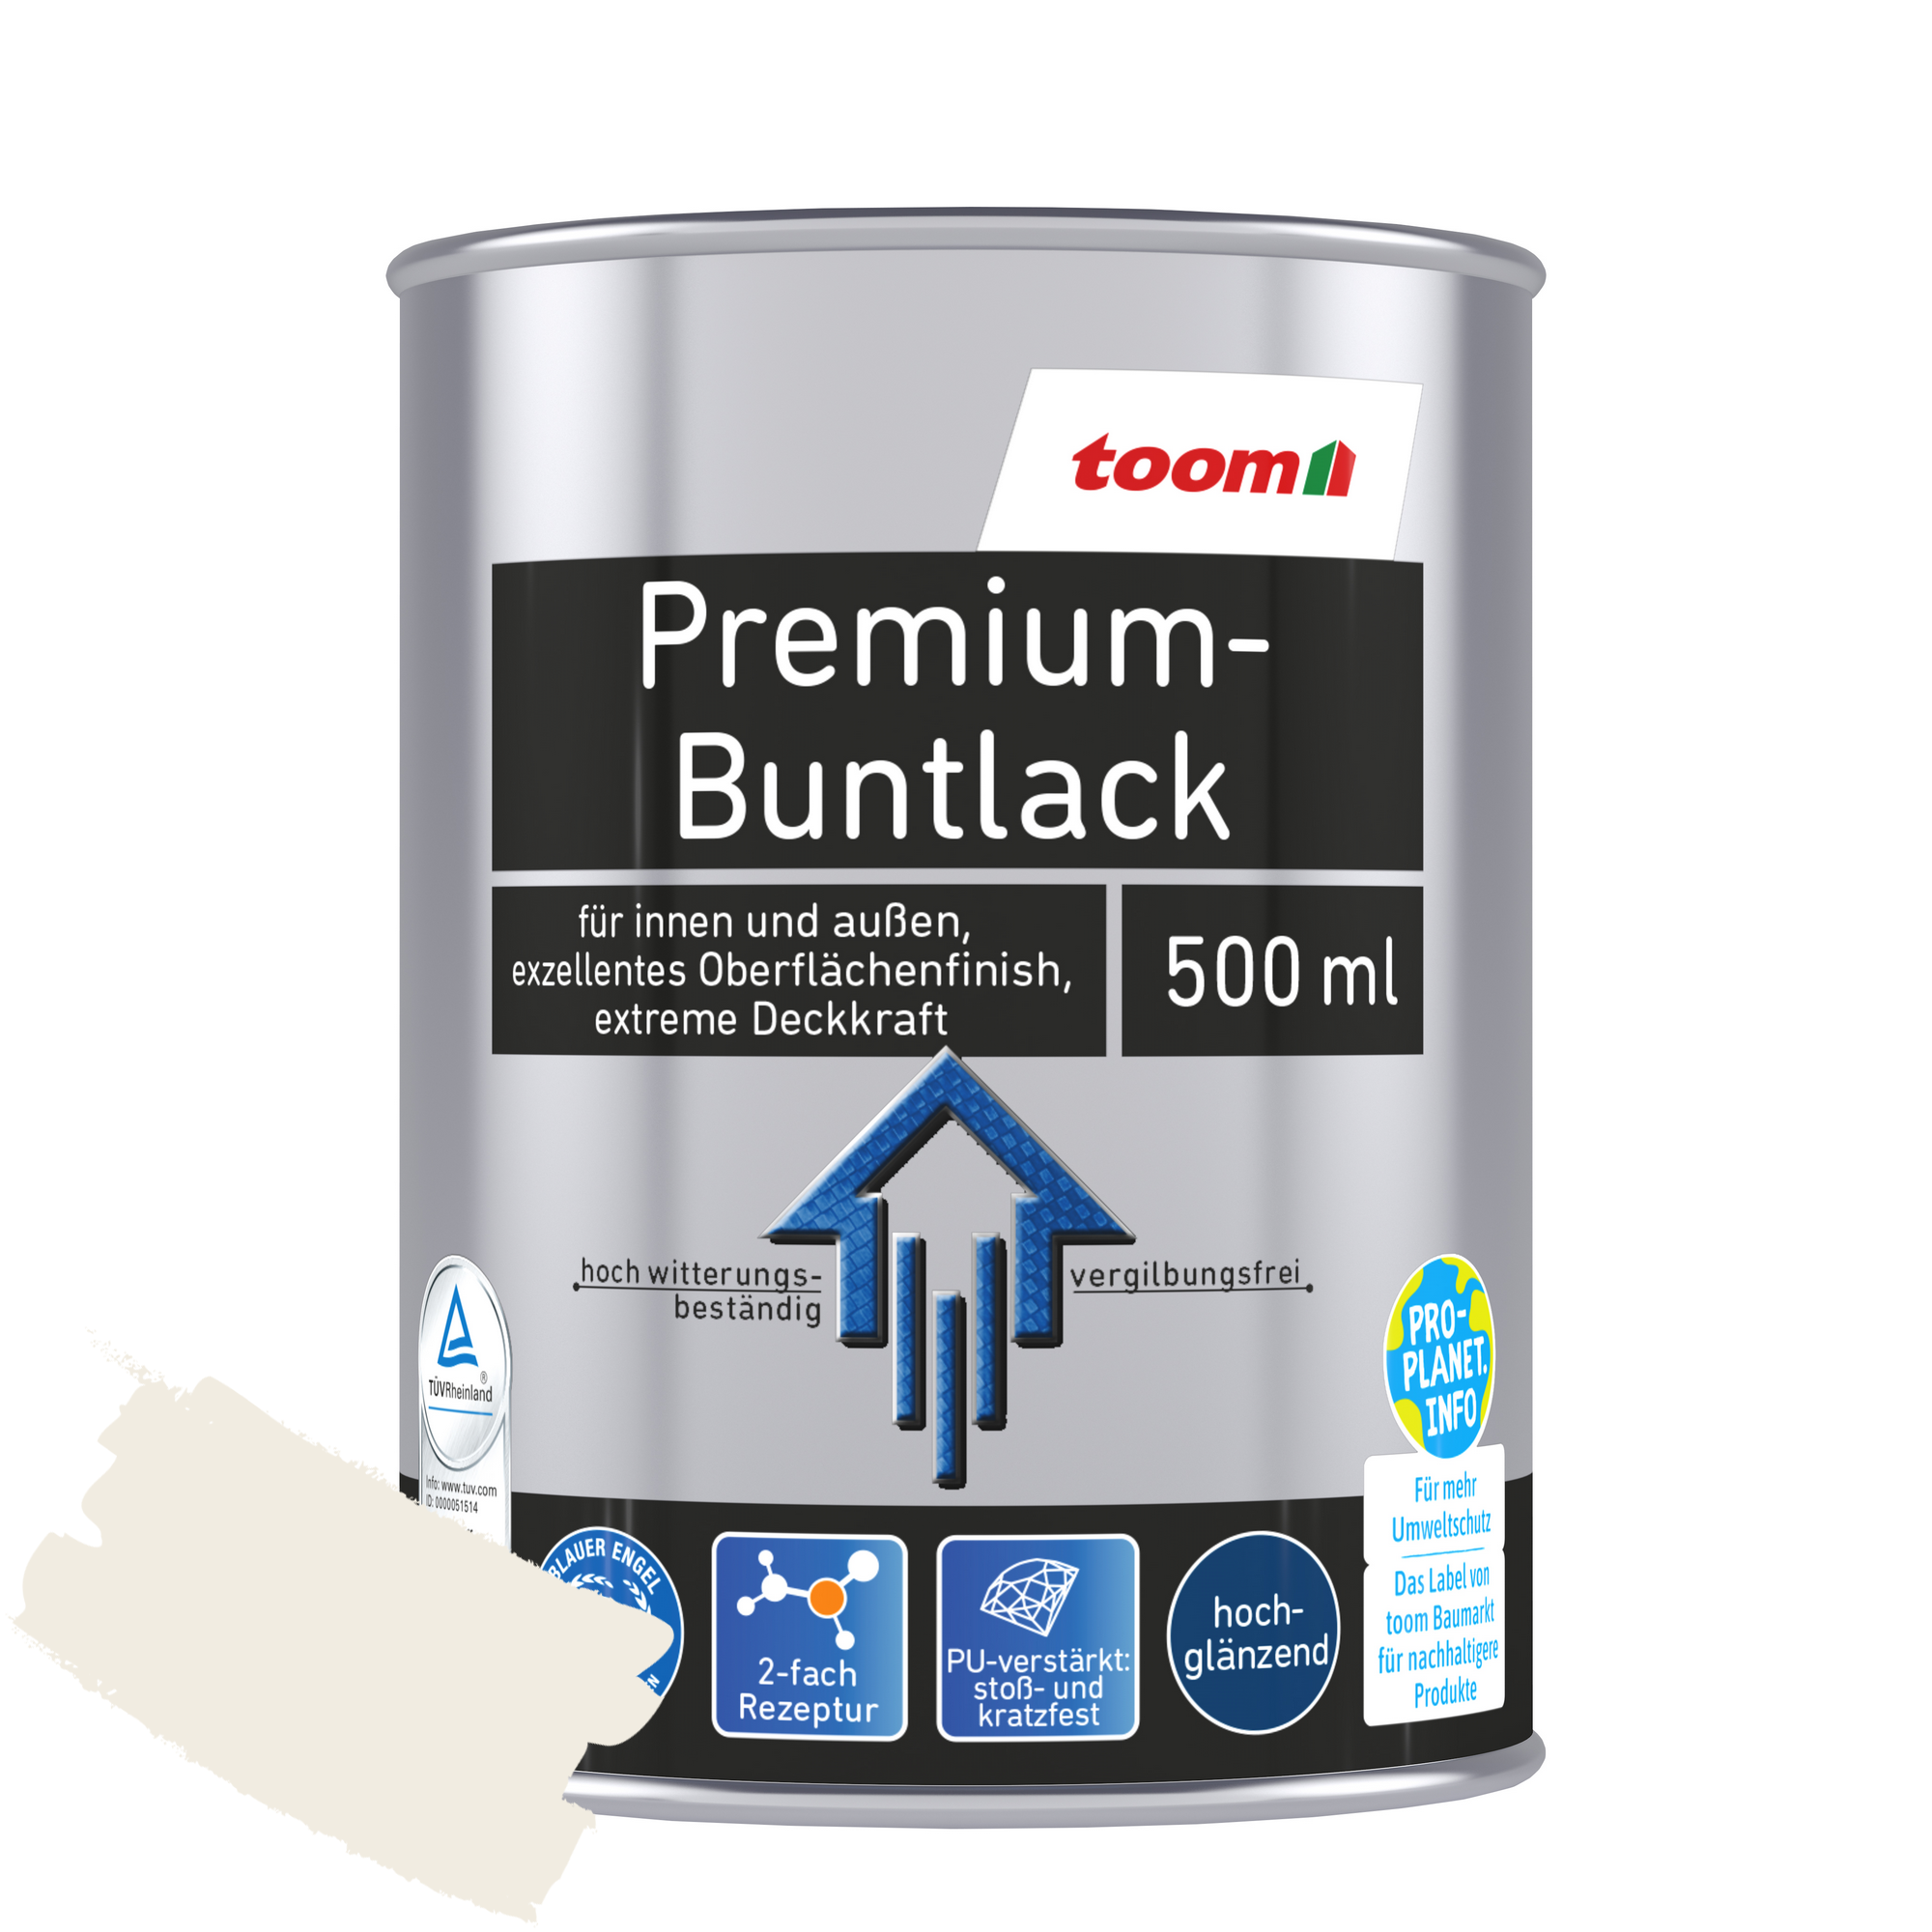 Premium-Buntlack 'Bergkristall' cremeweiß glänzend 500 ml + product picture